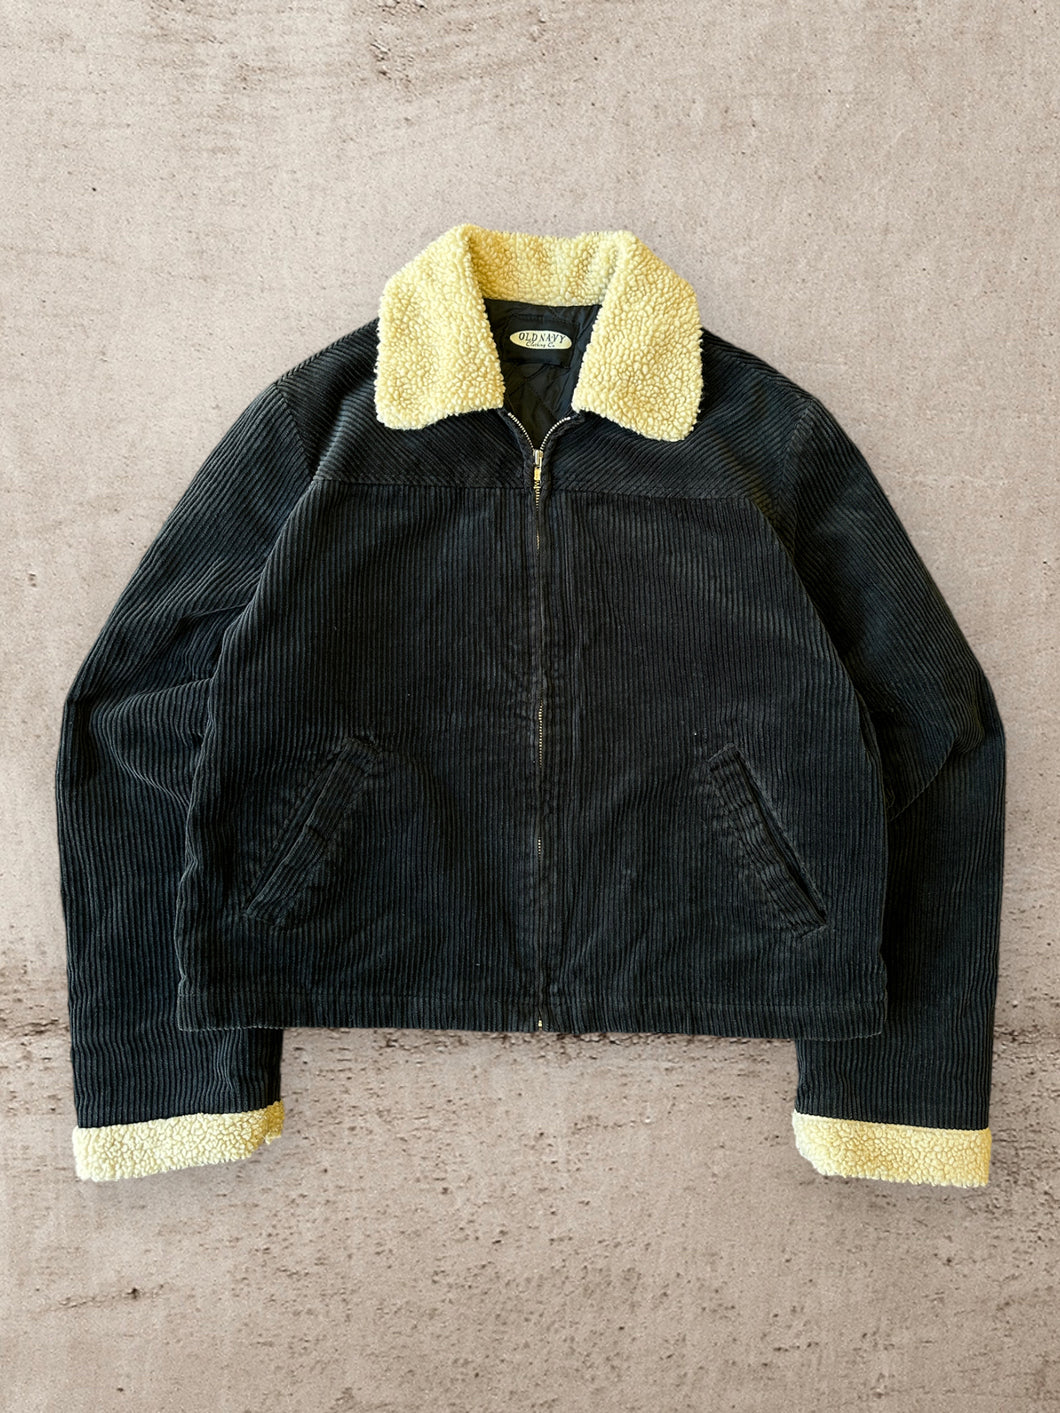 Vintage Corduroy Fleece Collared Jacket - Large